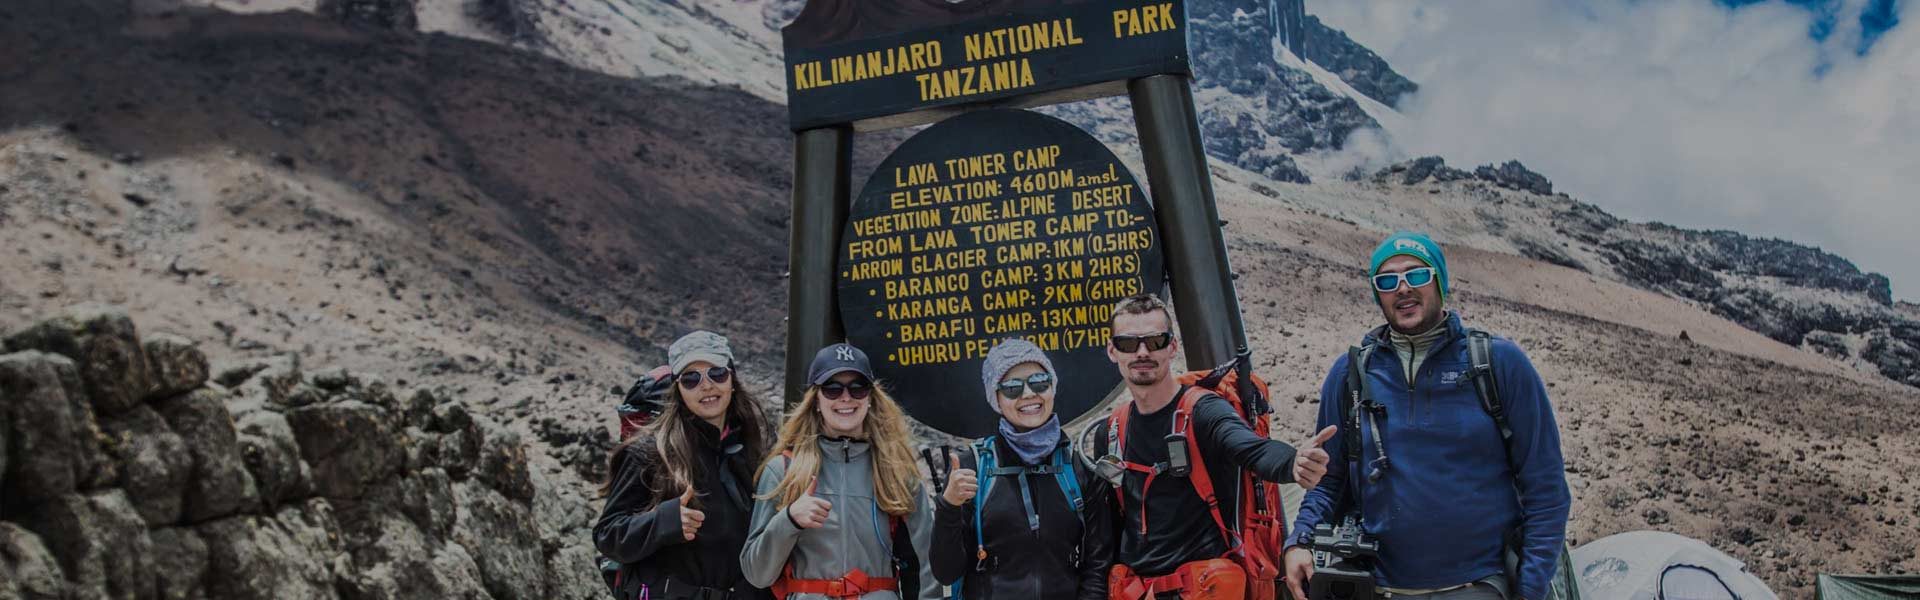 Kilimanjaro Tipping